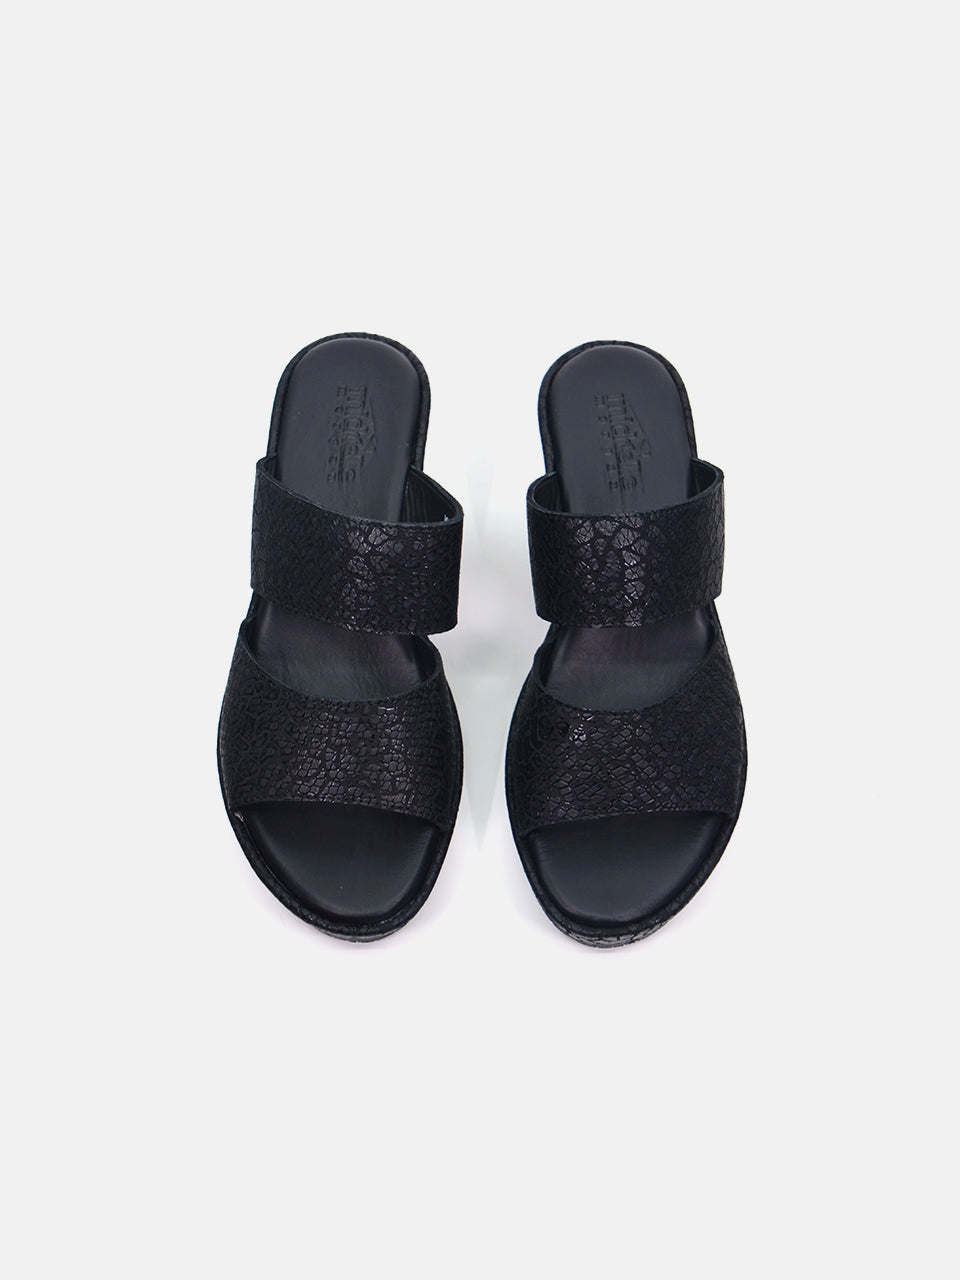 Michelle Morgan MM-302 Women's Wedge Sandals #color_Black